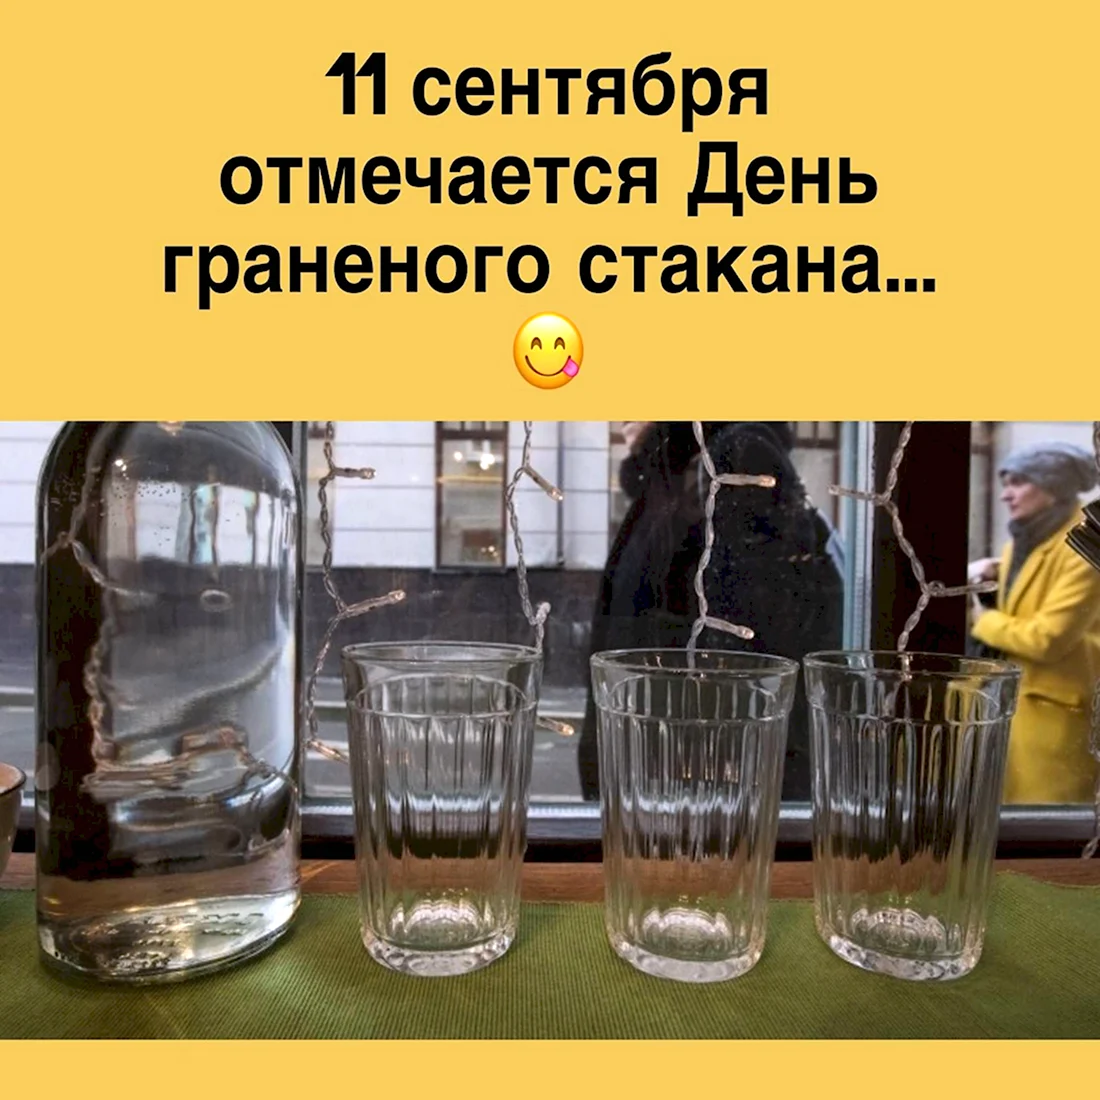 День гранёного стакана в России. Поздравление на праздник